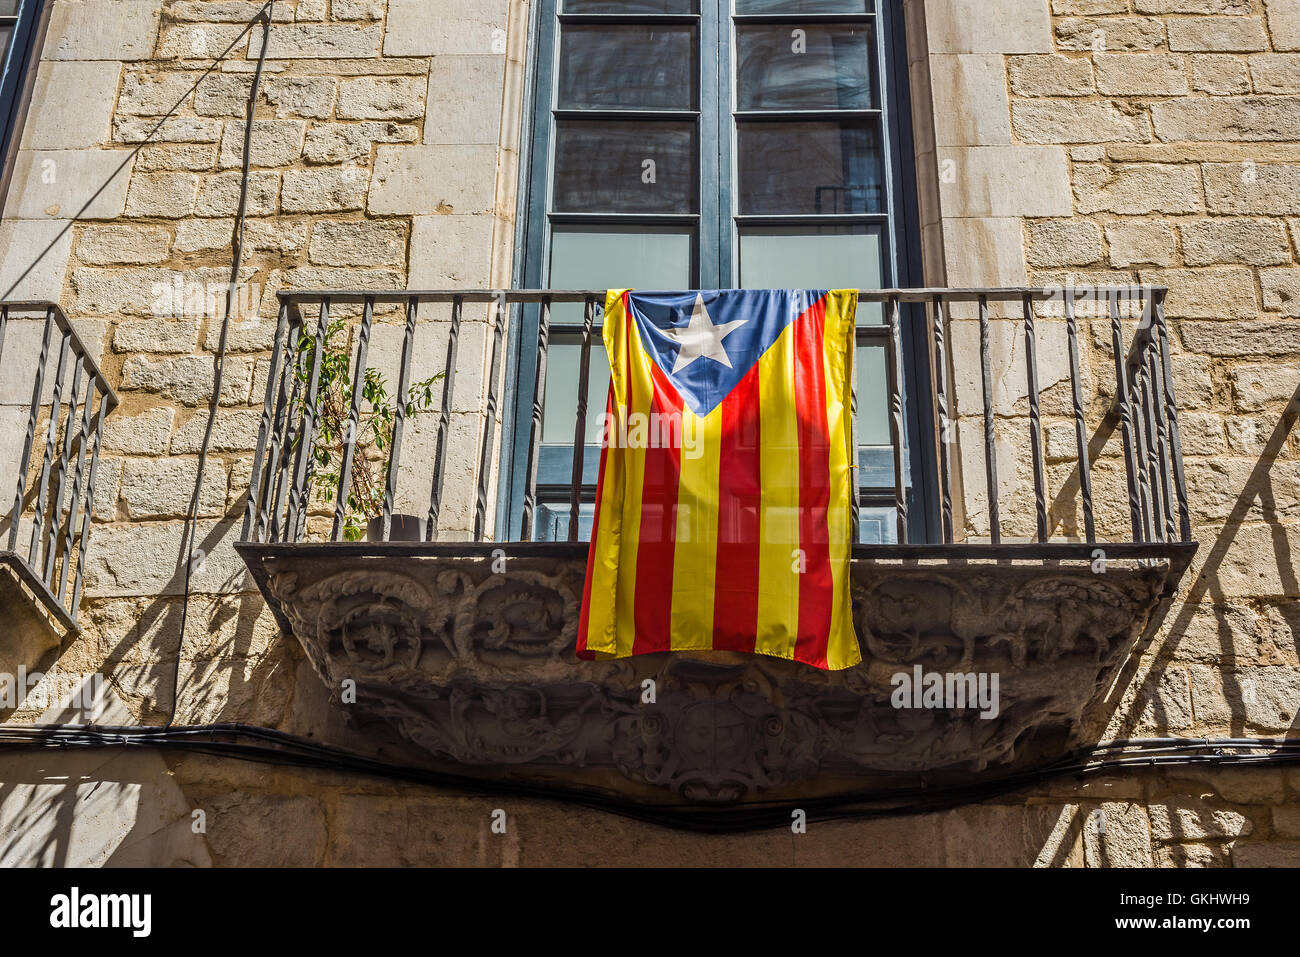 Bandiera del movimento di indipendenza della Catalogna, chiamato Estelada (ufficiose) in una strada del centro di Girona, Costa Brava, Spagna. Foto Stock